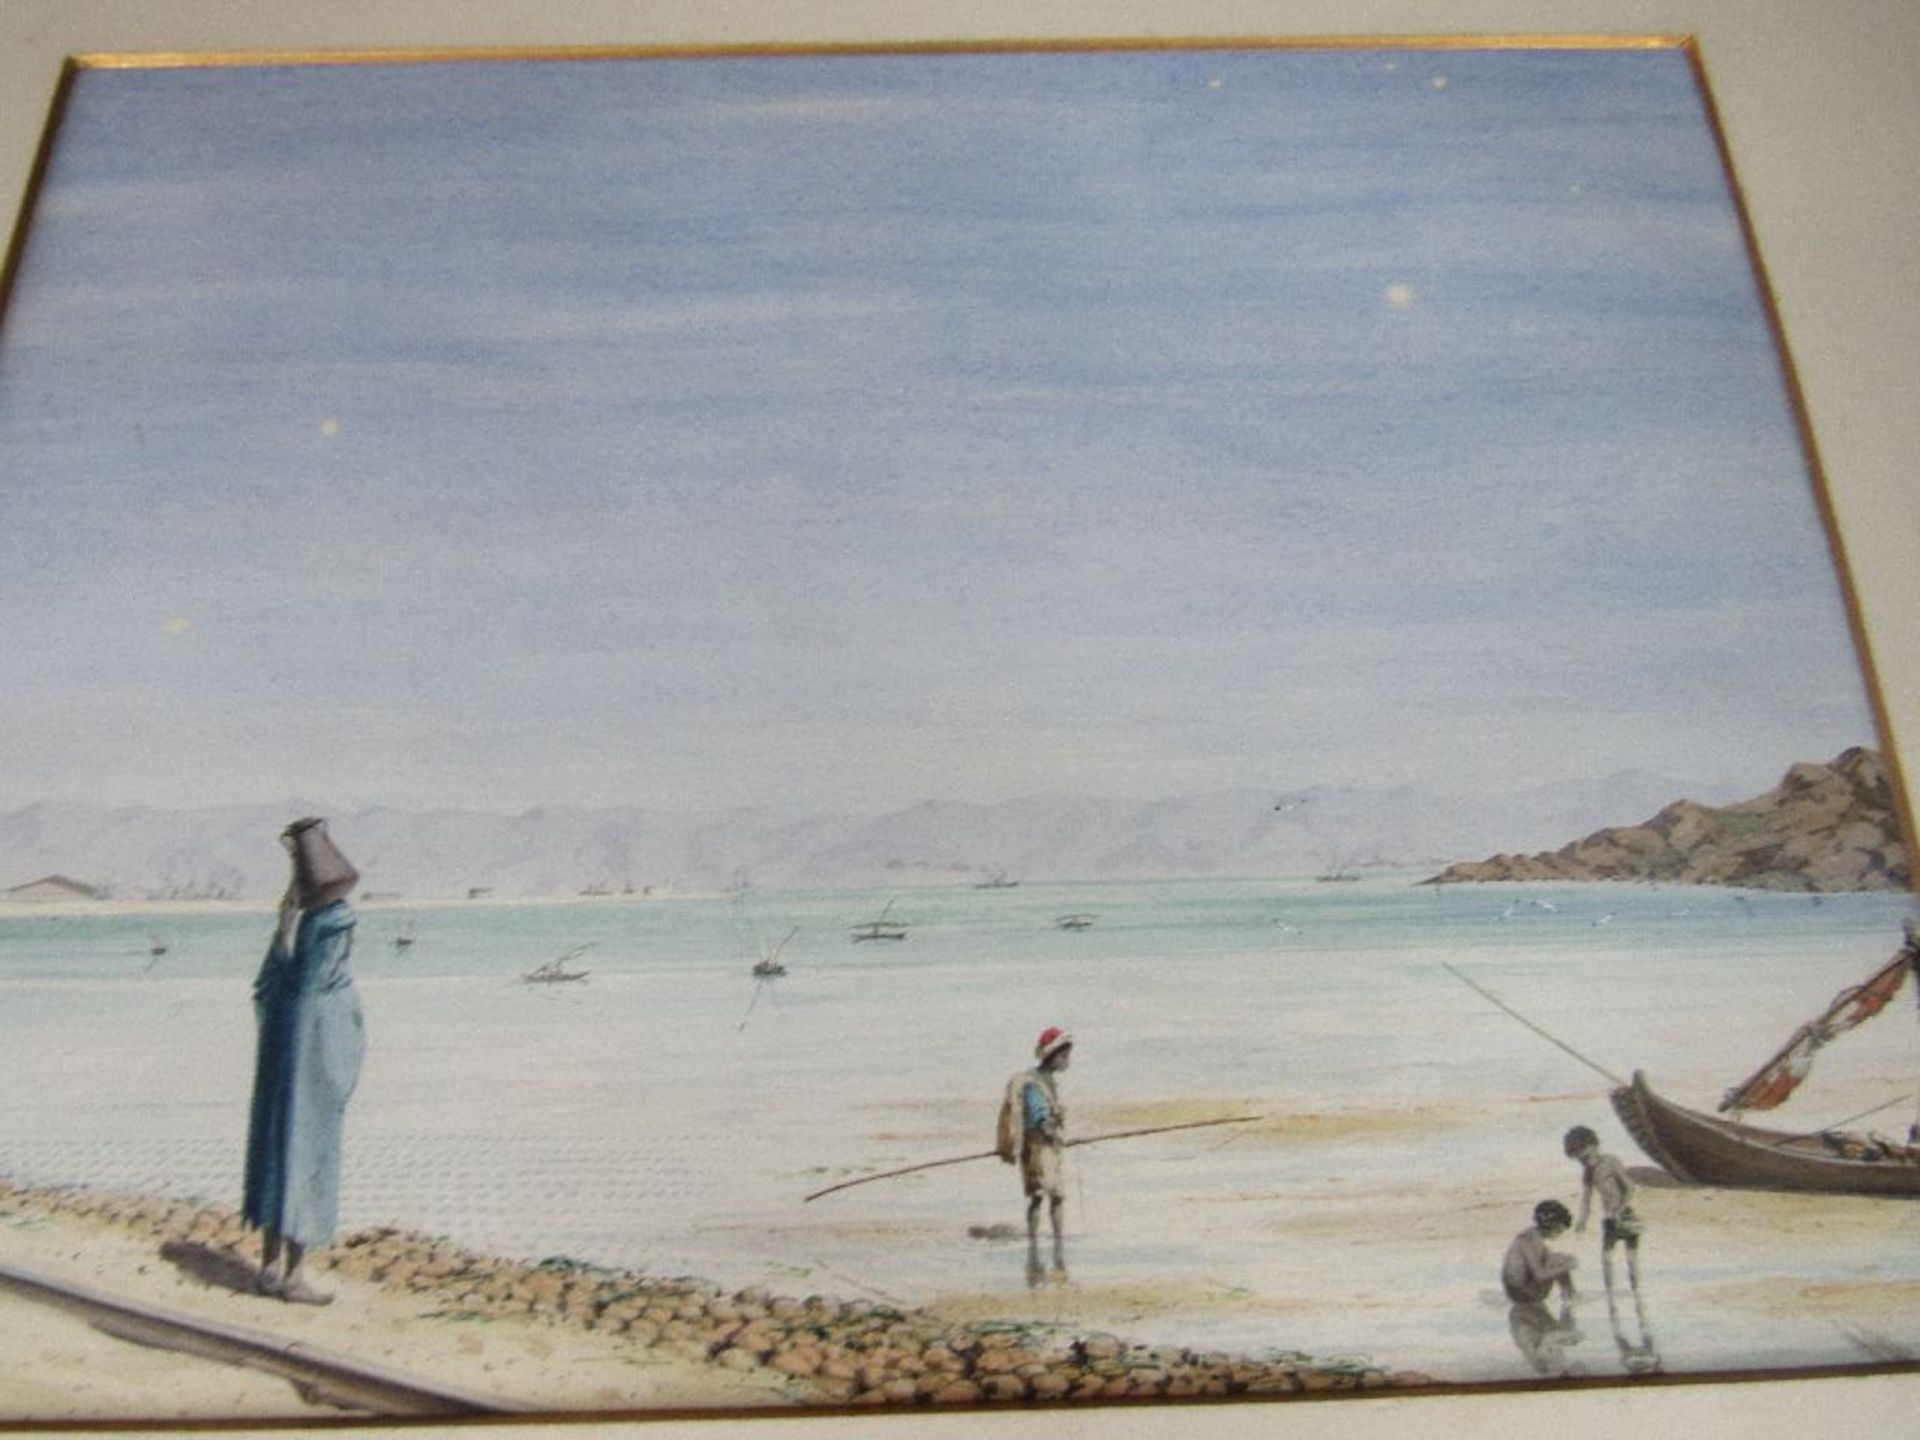 Schöne Sammlung Gemälde wohl feine Aquarelle Mitbringsel um 1900 aus Ägypten 48 Exemplare komplett - Image 11 of 13